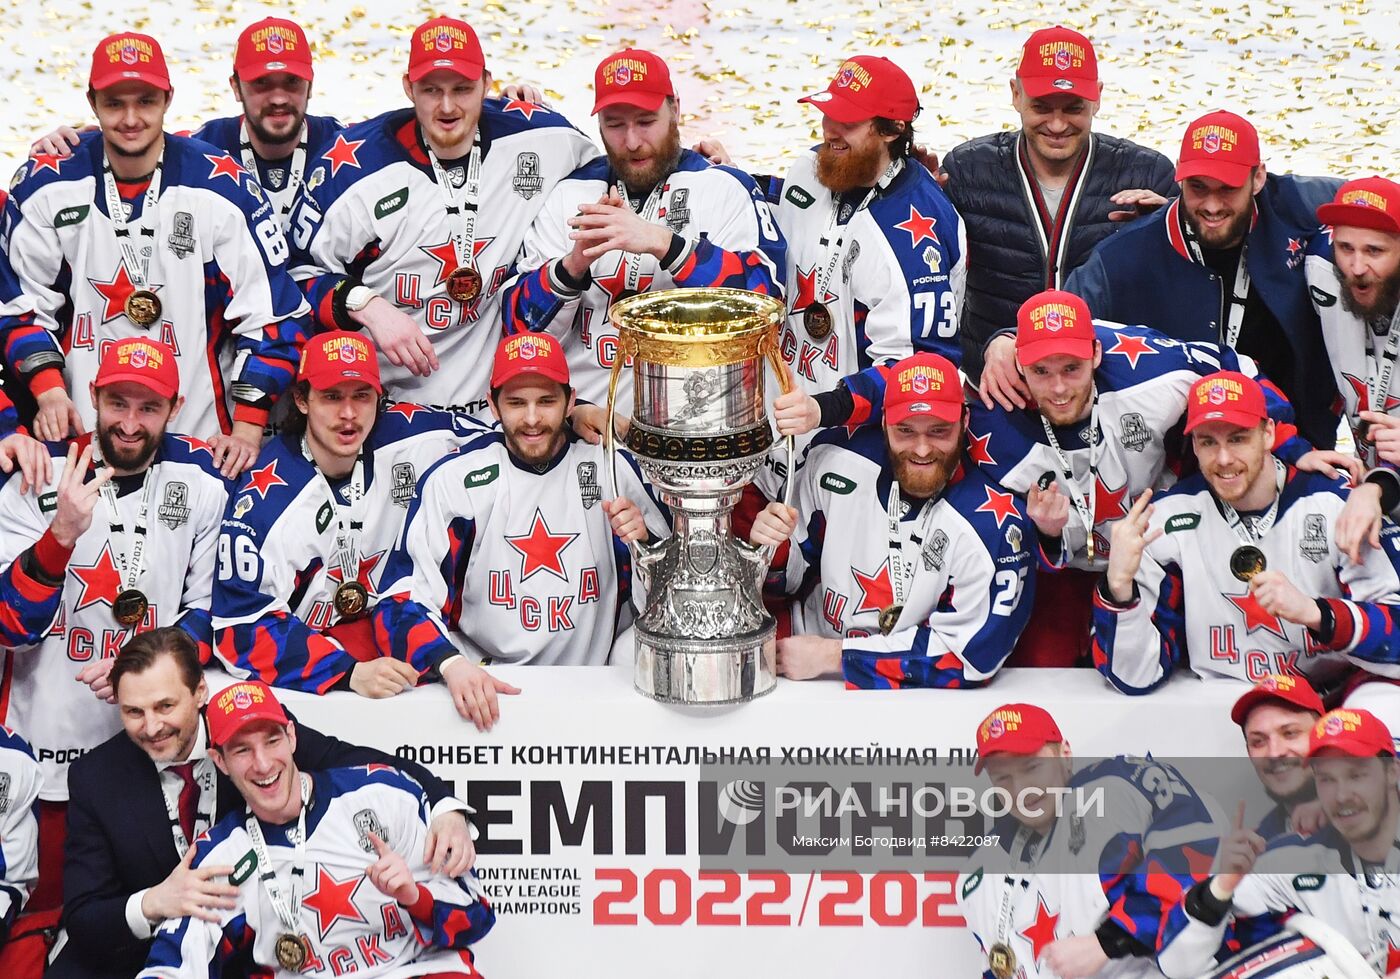 цска хоккейный клуб состав 2019 2020